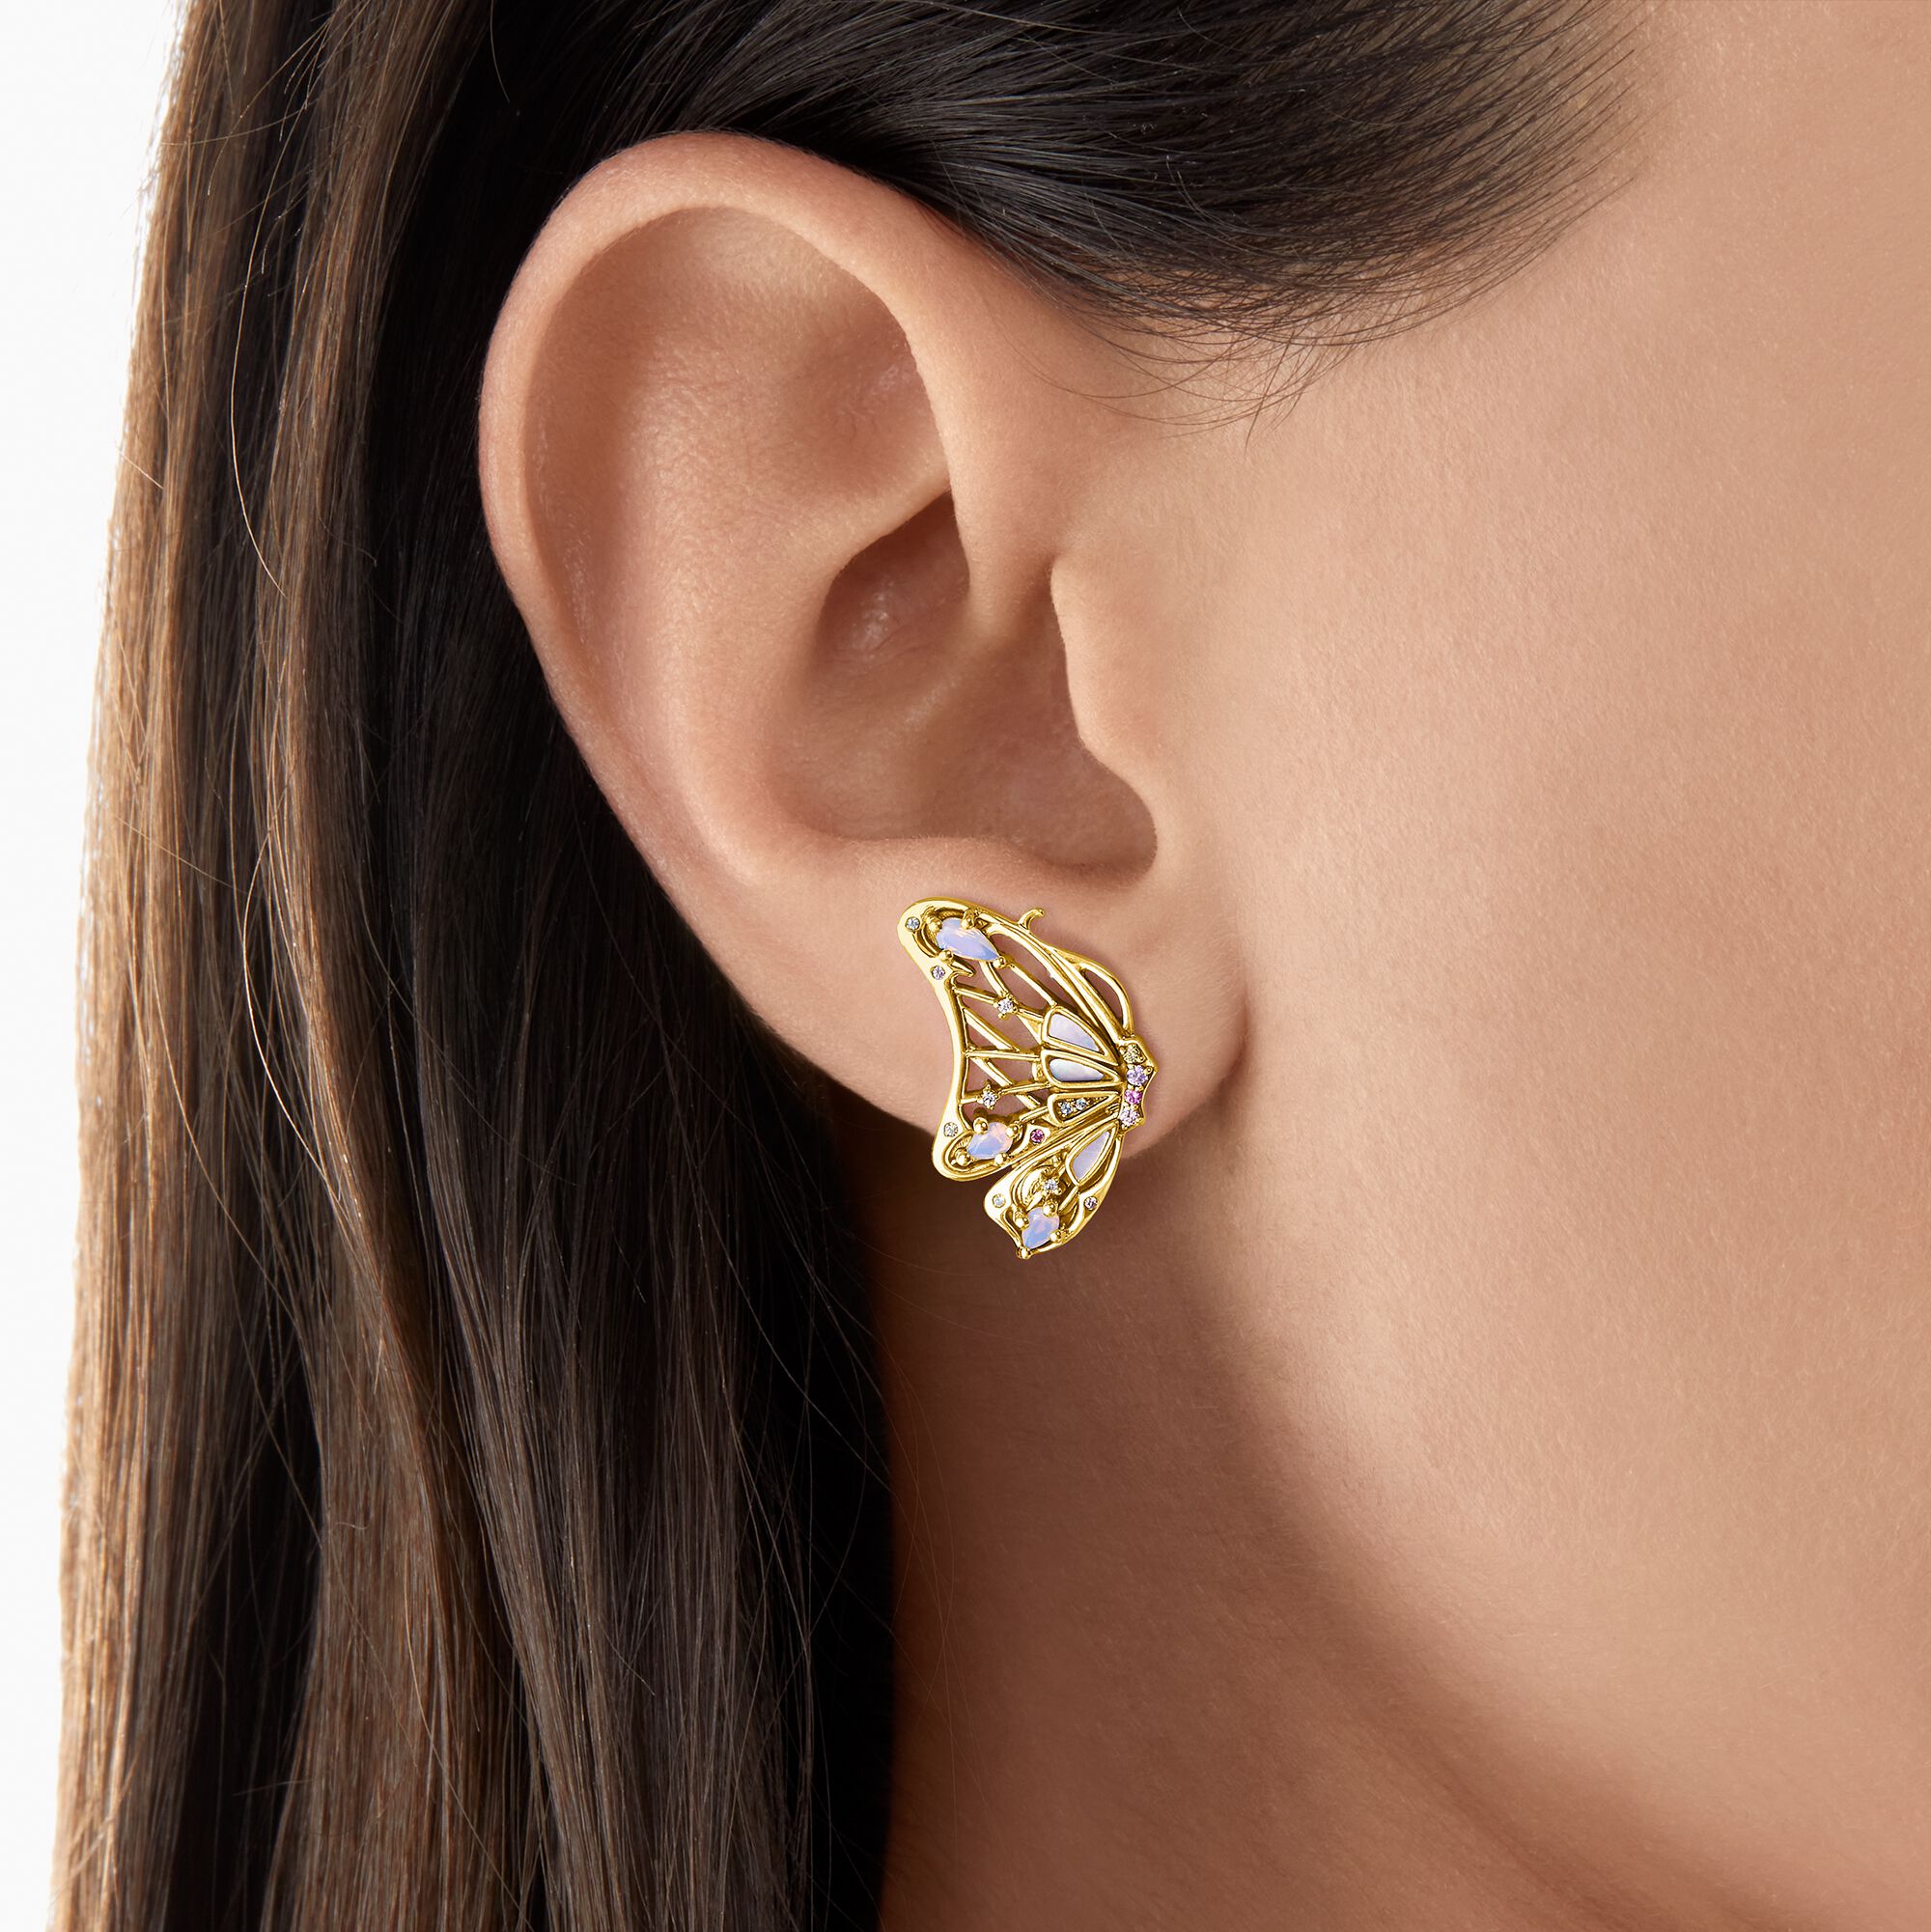 Pendientes mariposa oro - Joyería inspirada en la naturaleza